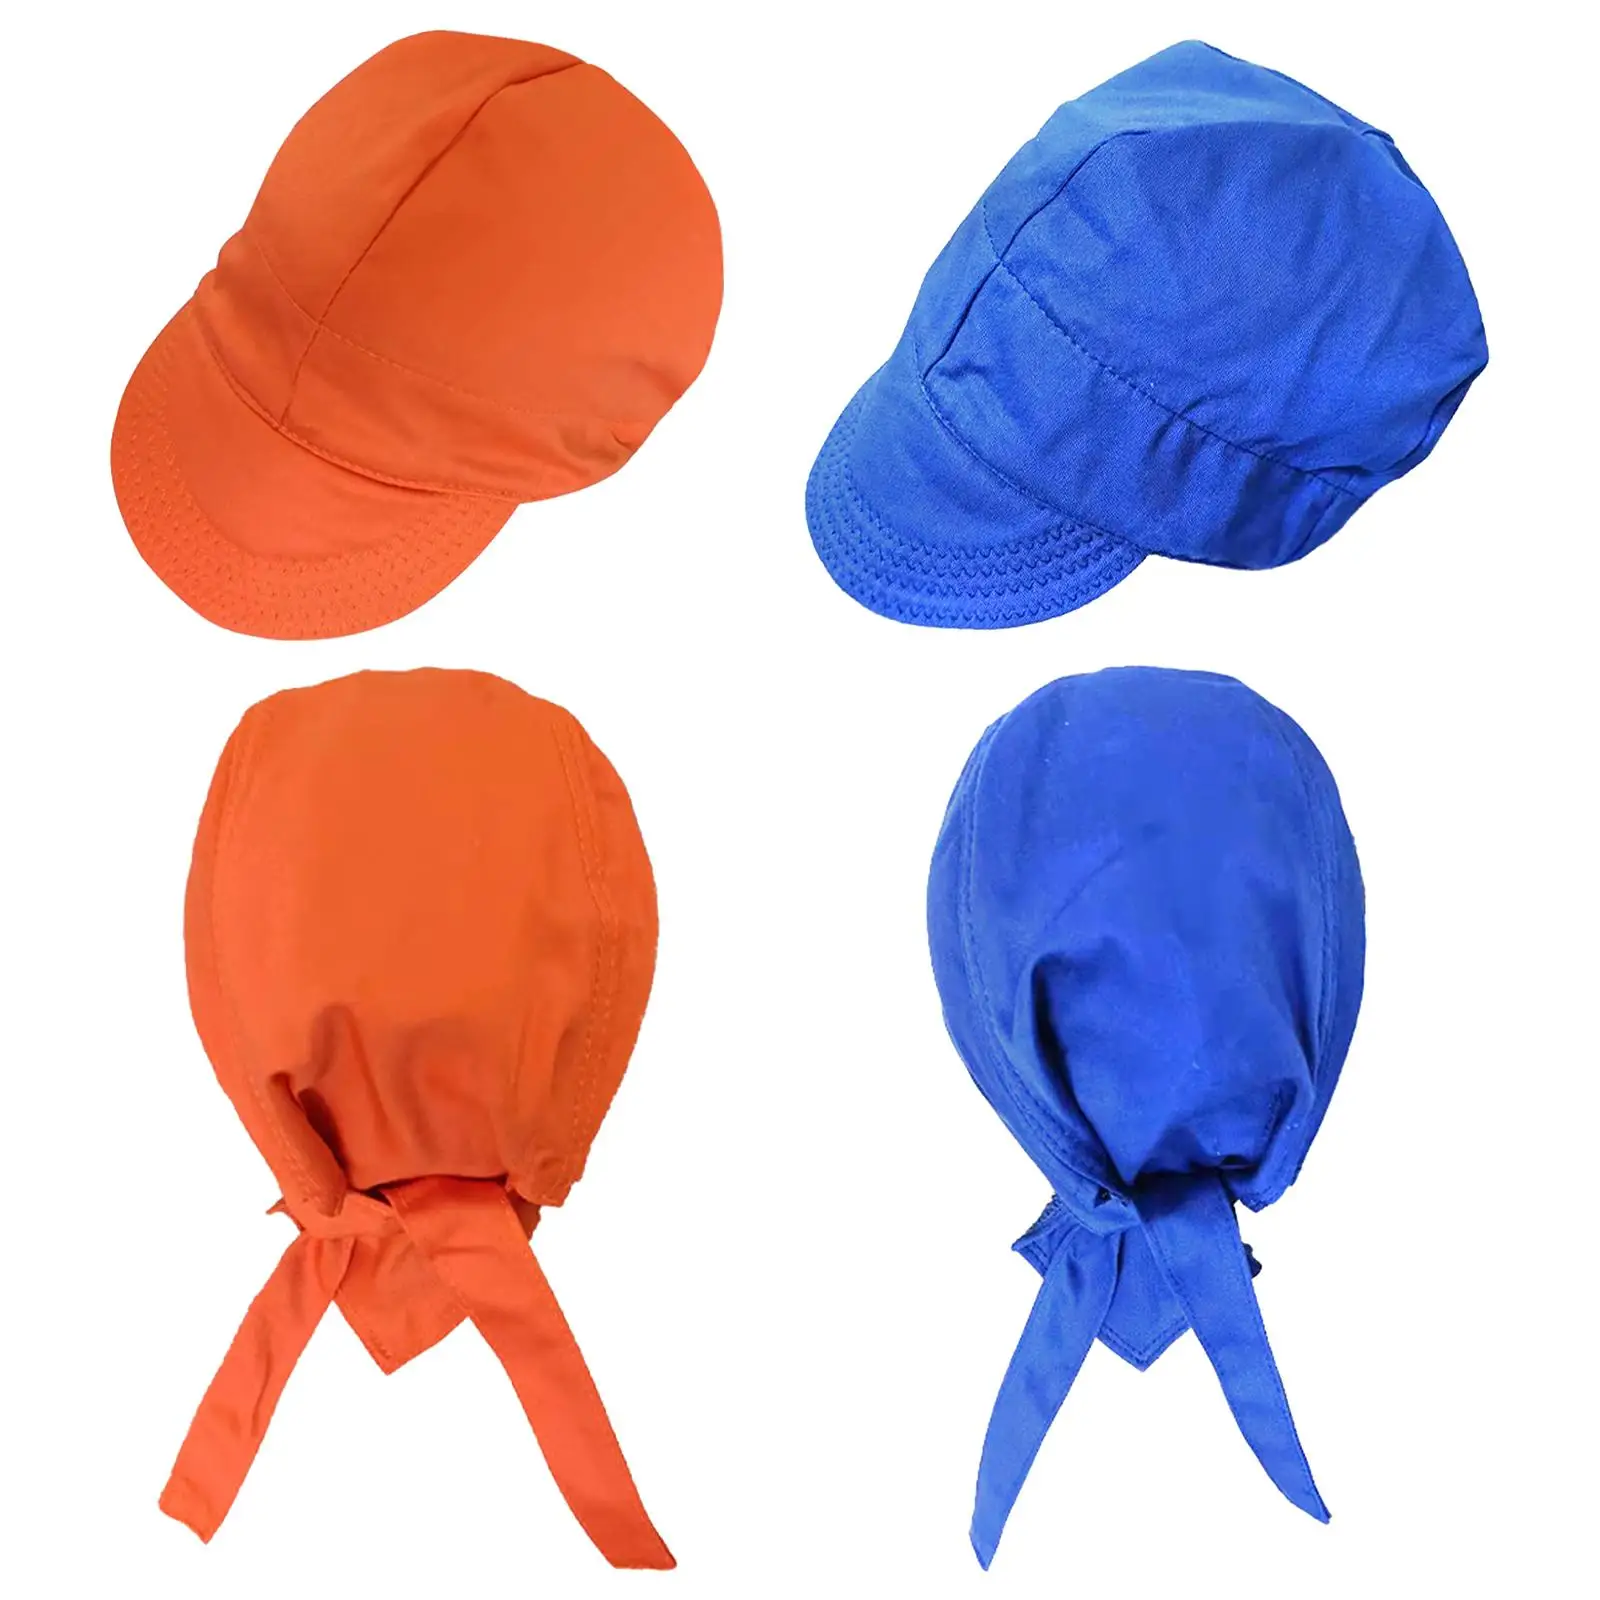 Welding Caps Hoods Head Protective Bandana Type Work Caps Welders Fire Resistant Anti Scalding Hat Adjustable Cotton Welding Hat